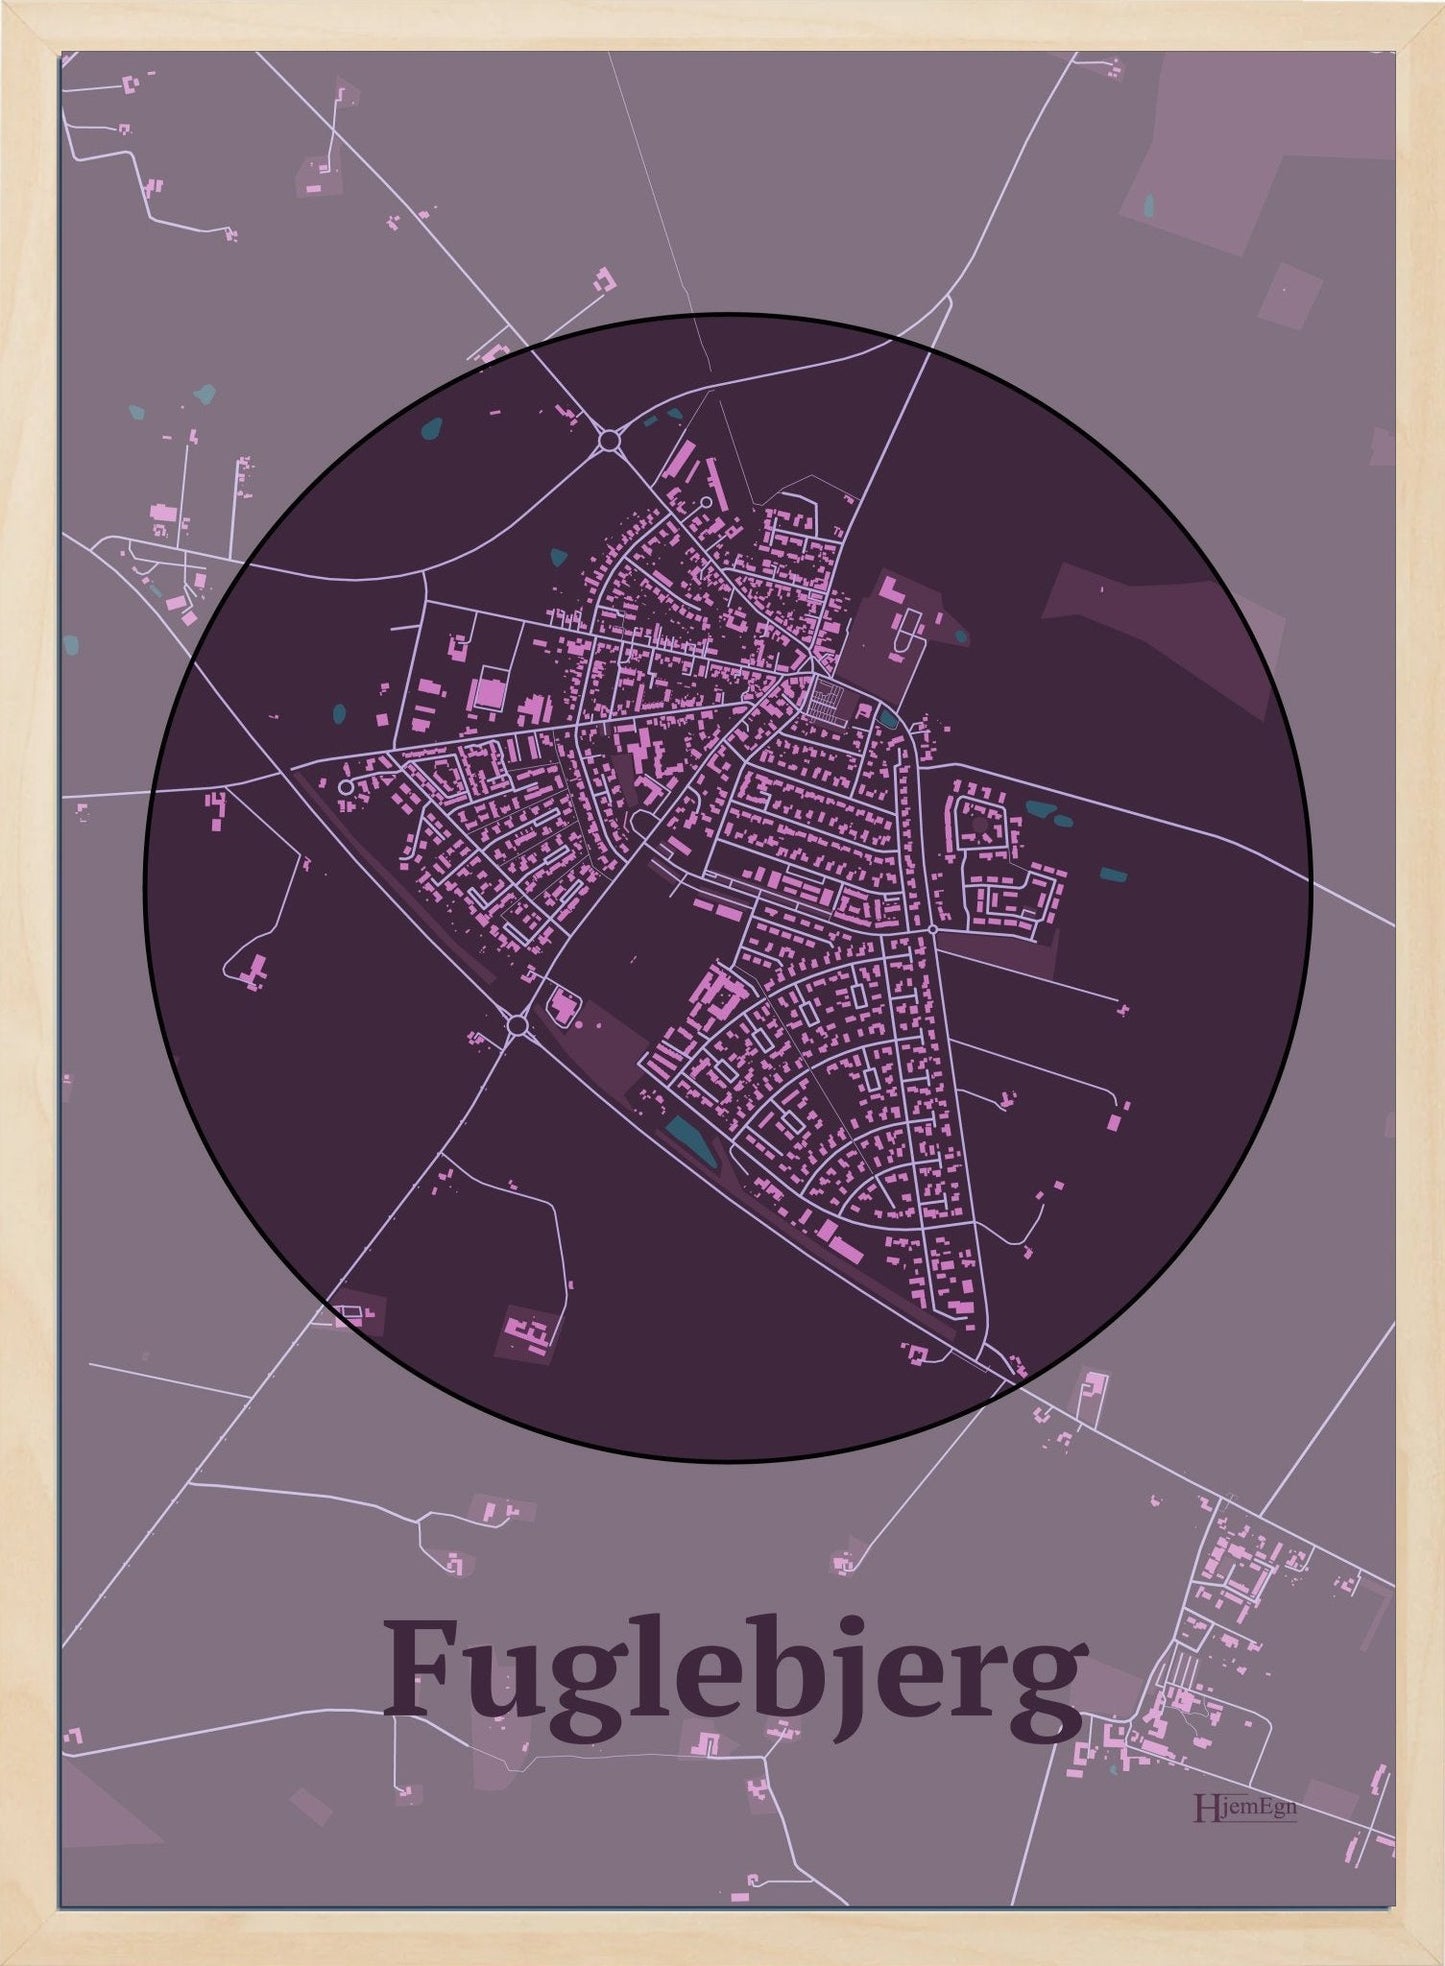 Fuglebjerg plakat i farve mørk rød og HjemEgn.dk design centrum. Design bykort for Fuglebjerg